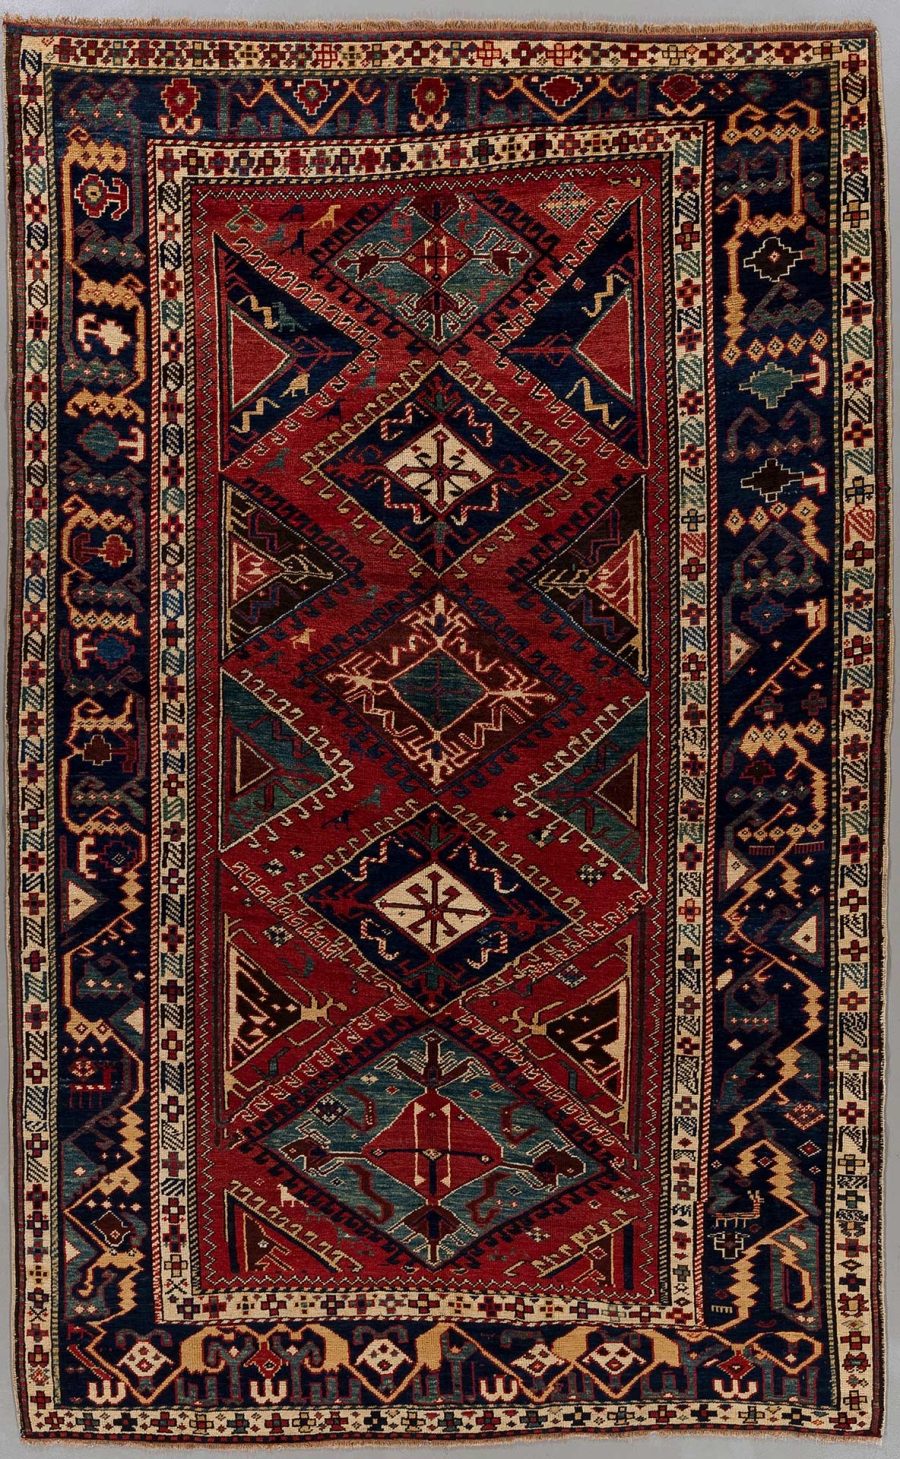 Antiker handgewebter orientalischer Teppich mit komplexen geometrischen Mustern und Bordüren in roten, blauen und beige Tönen.